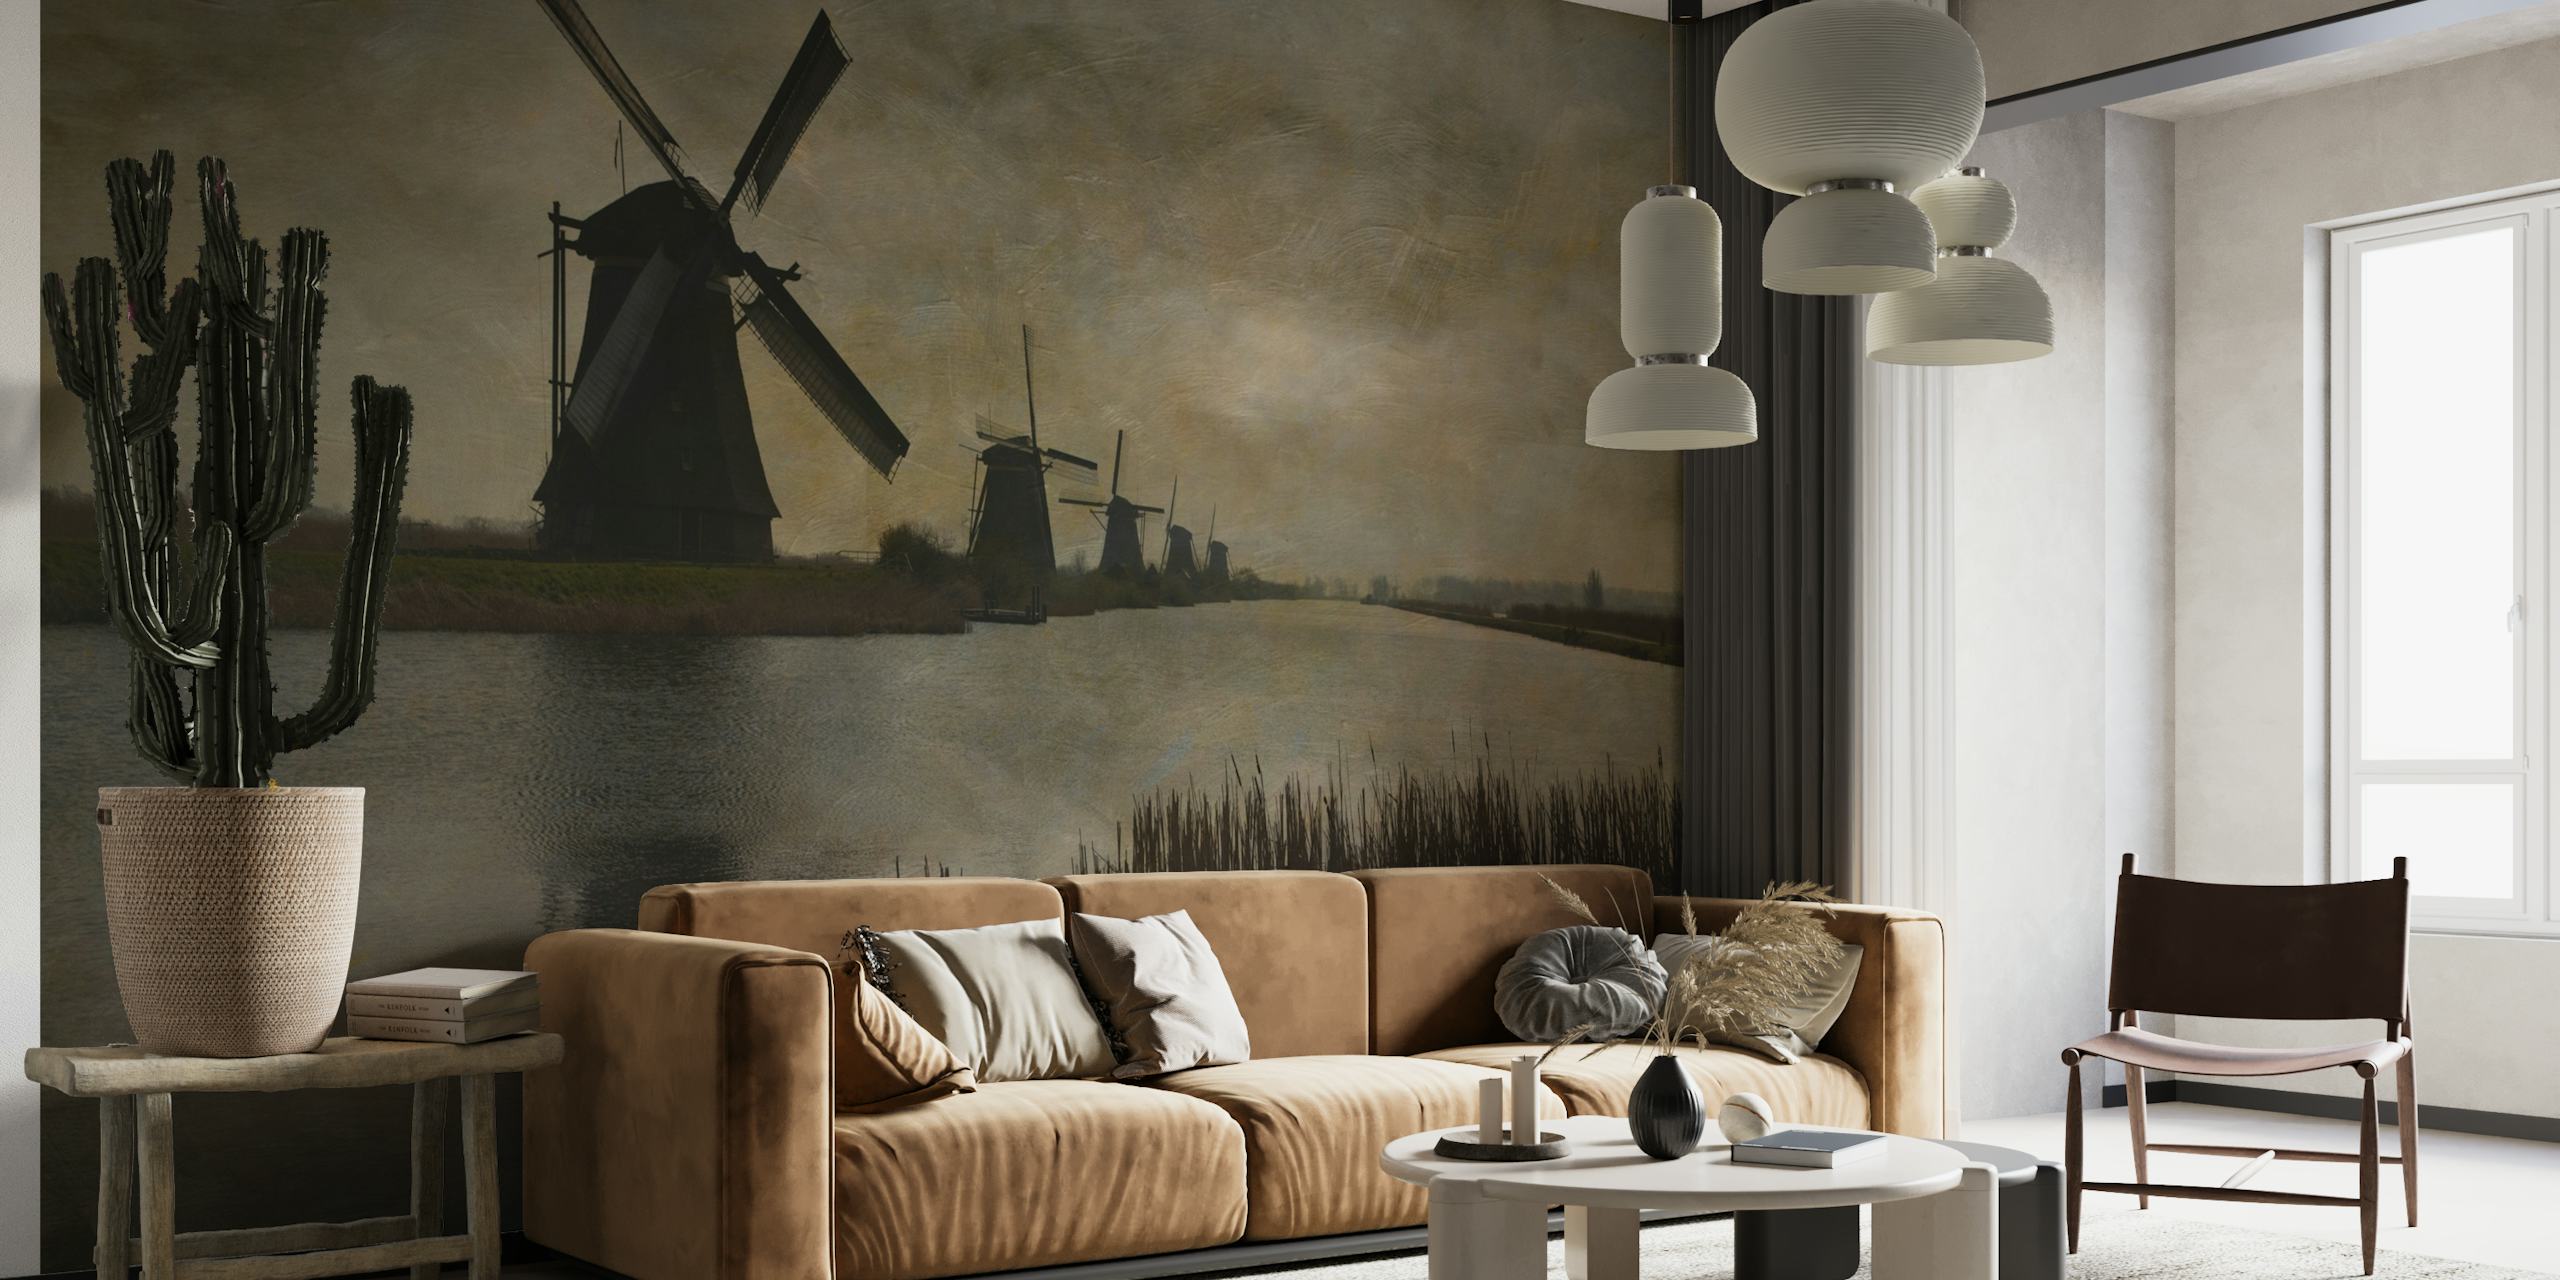 Historic windmills under twilight skies at Kinderdijk wall mural